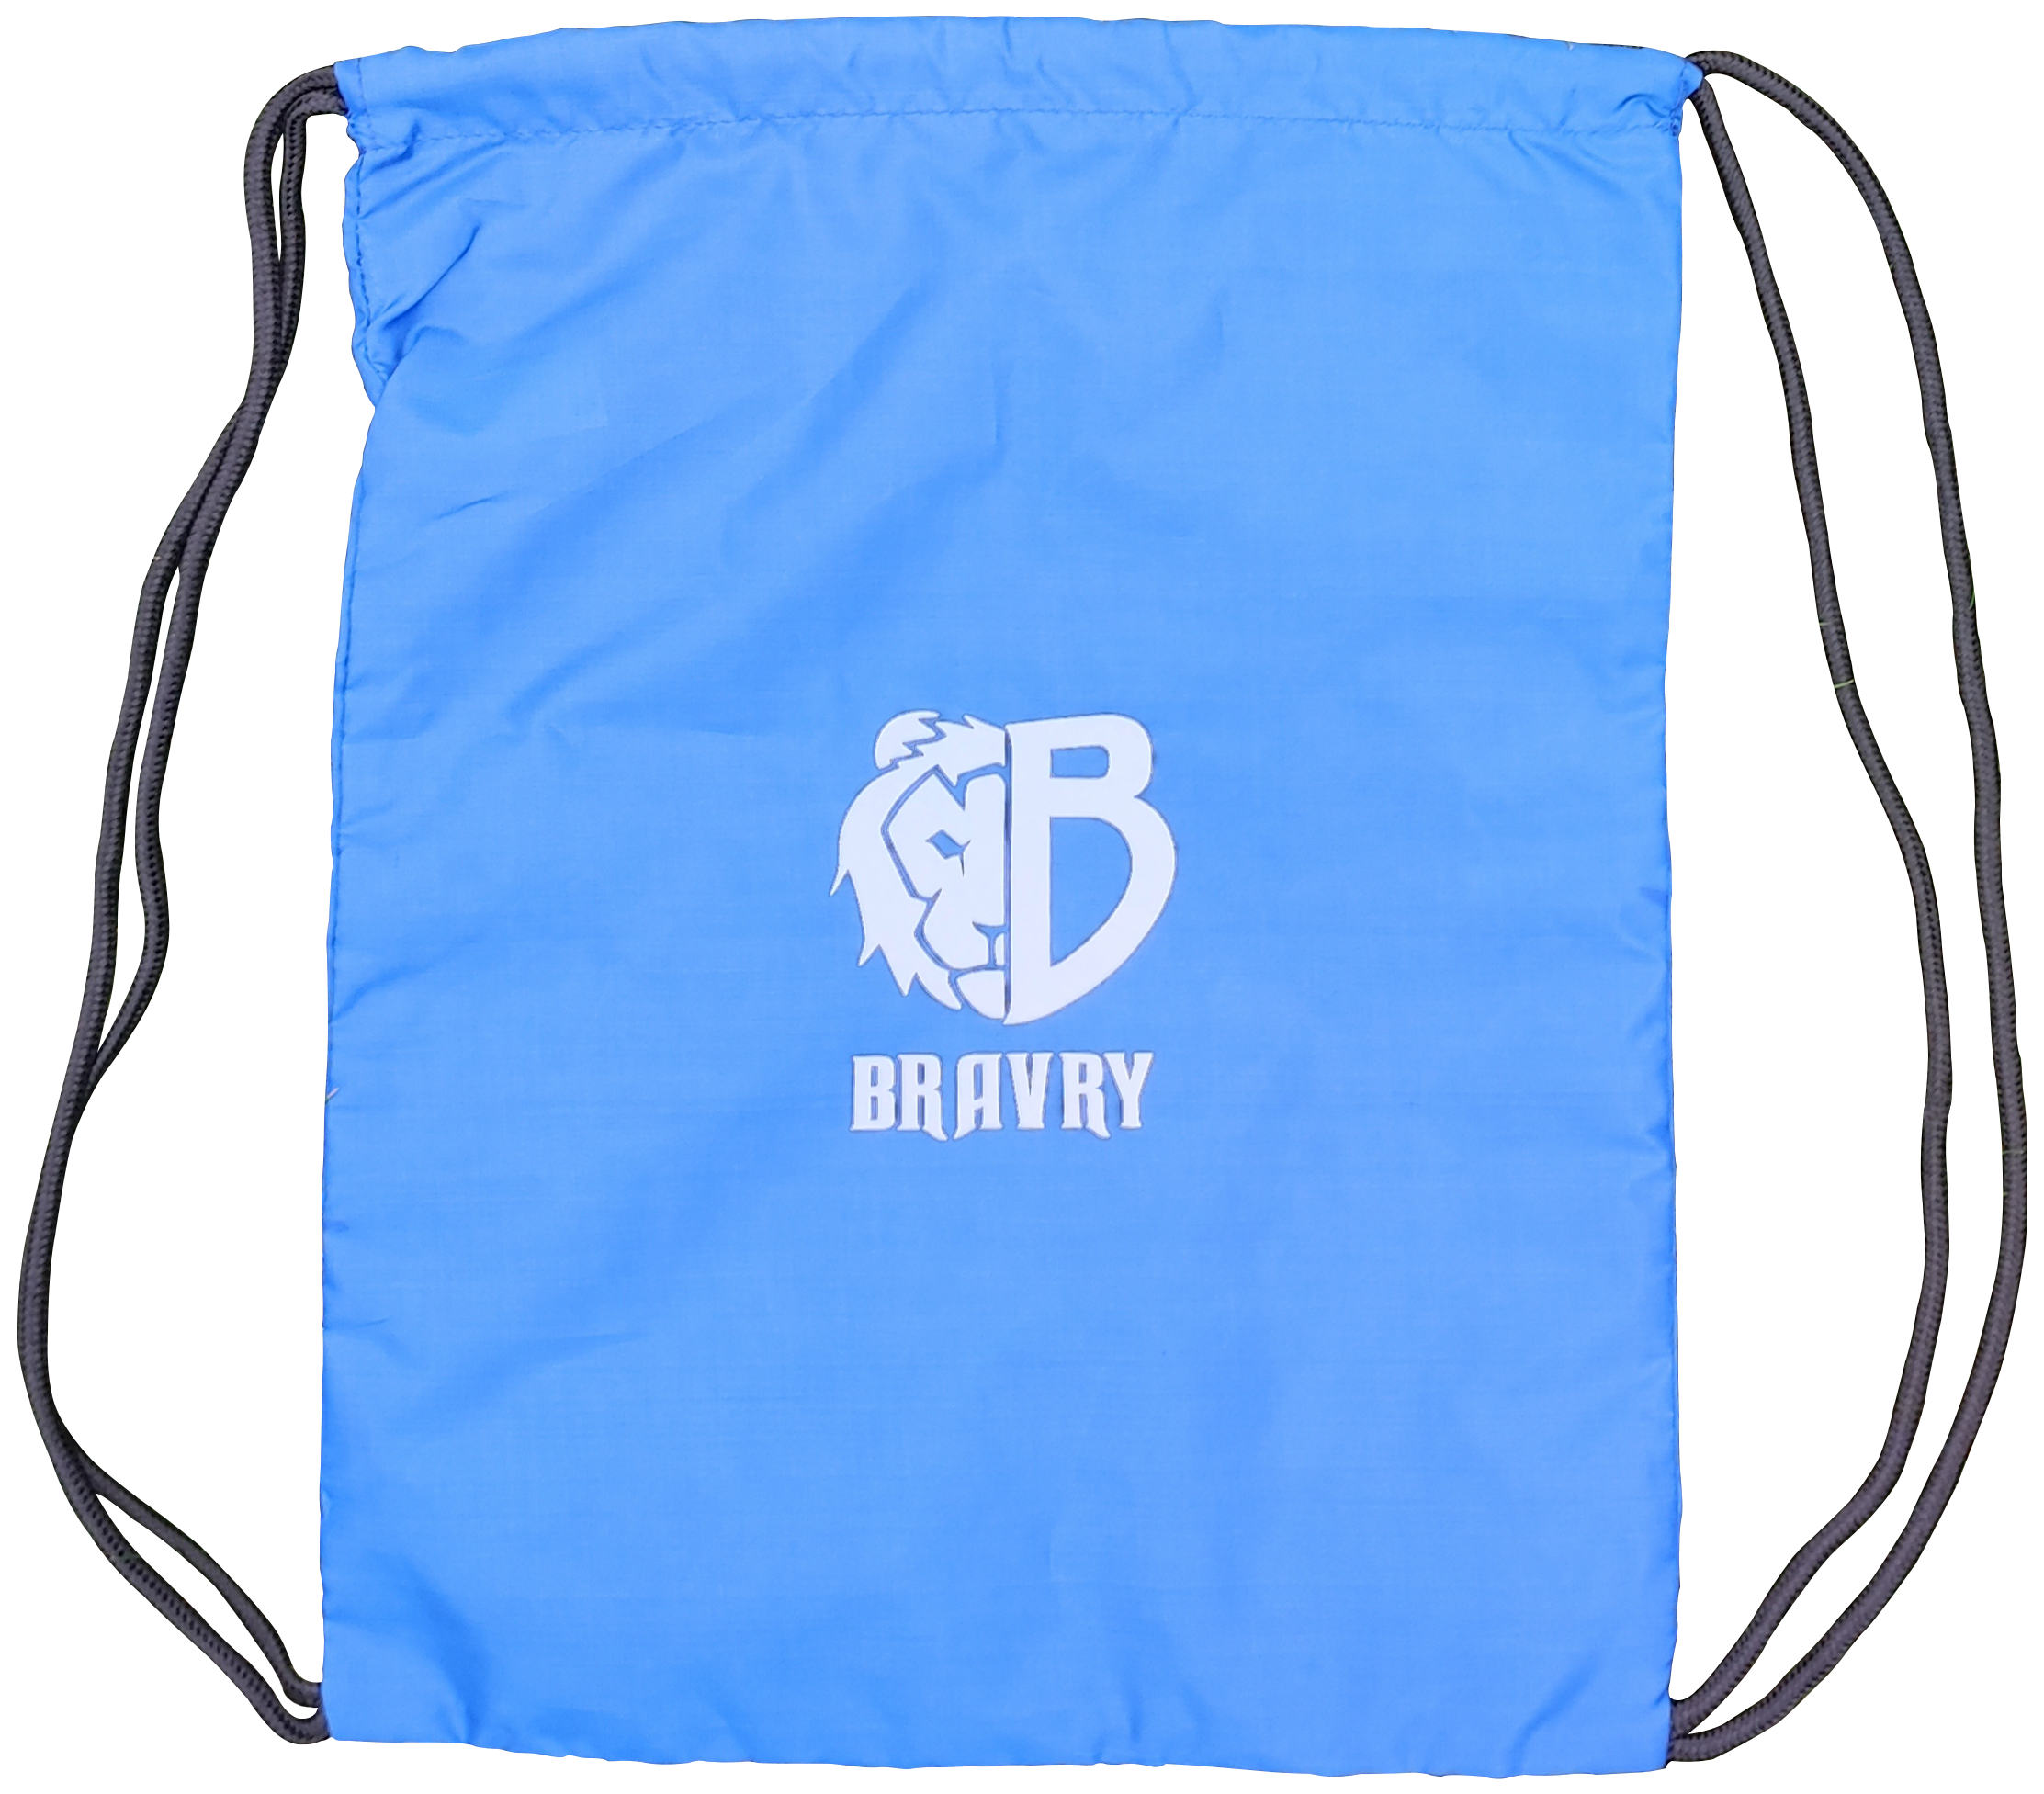 Рюкзак на затяжках BRAVRY Compact синій